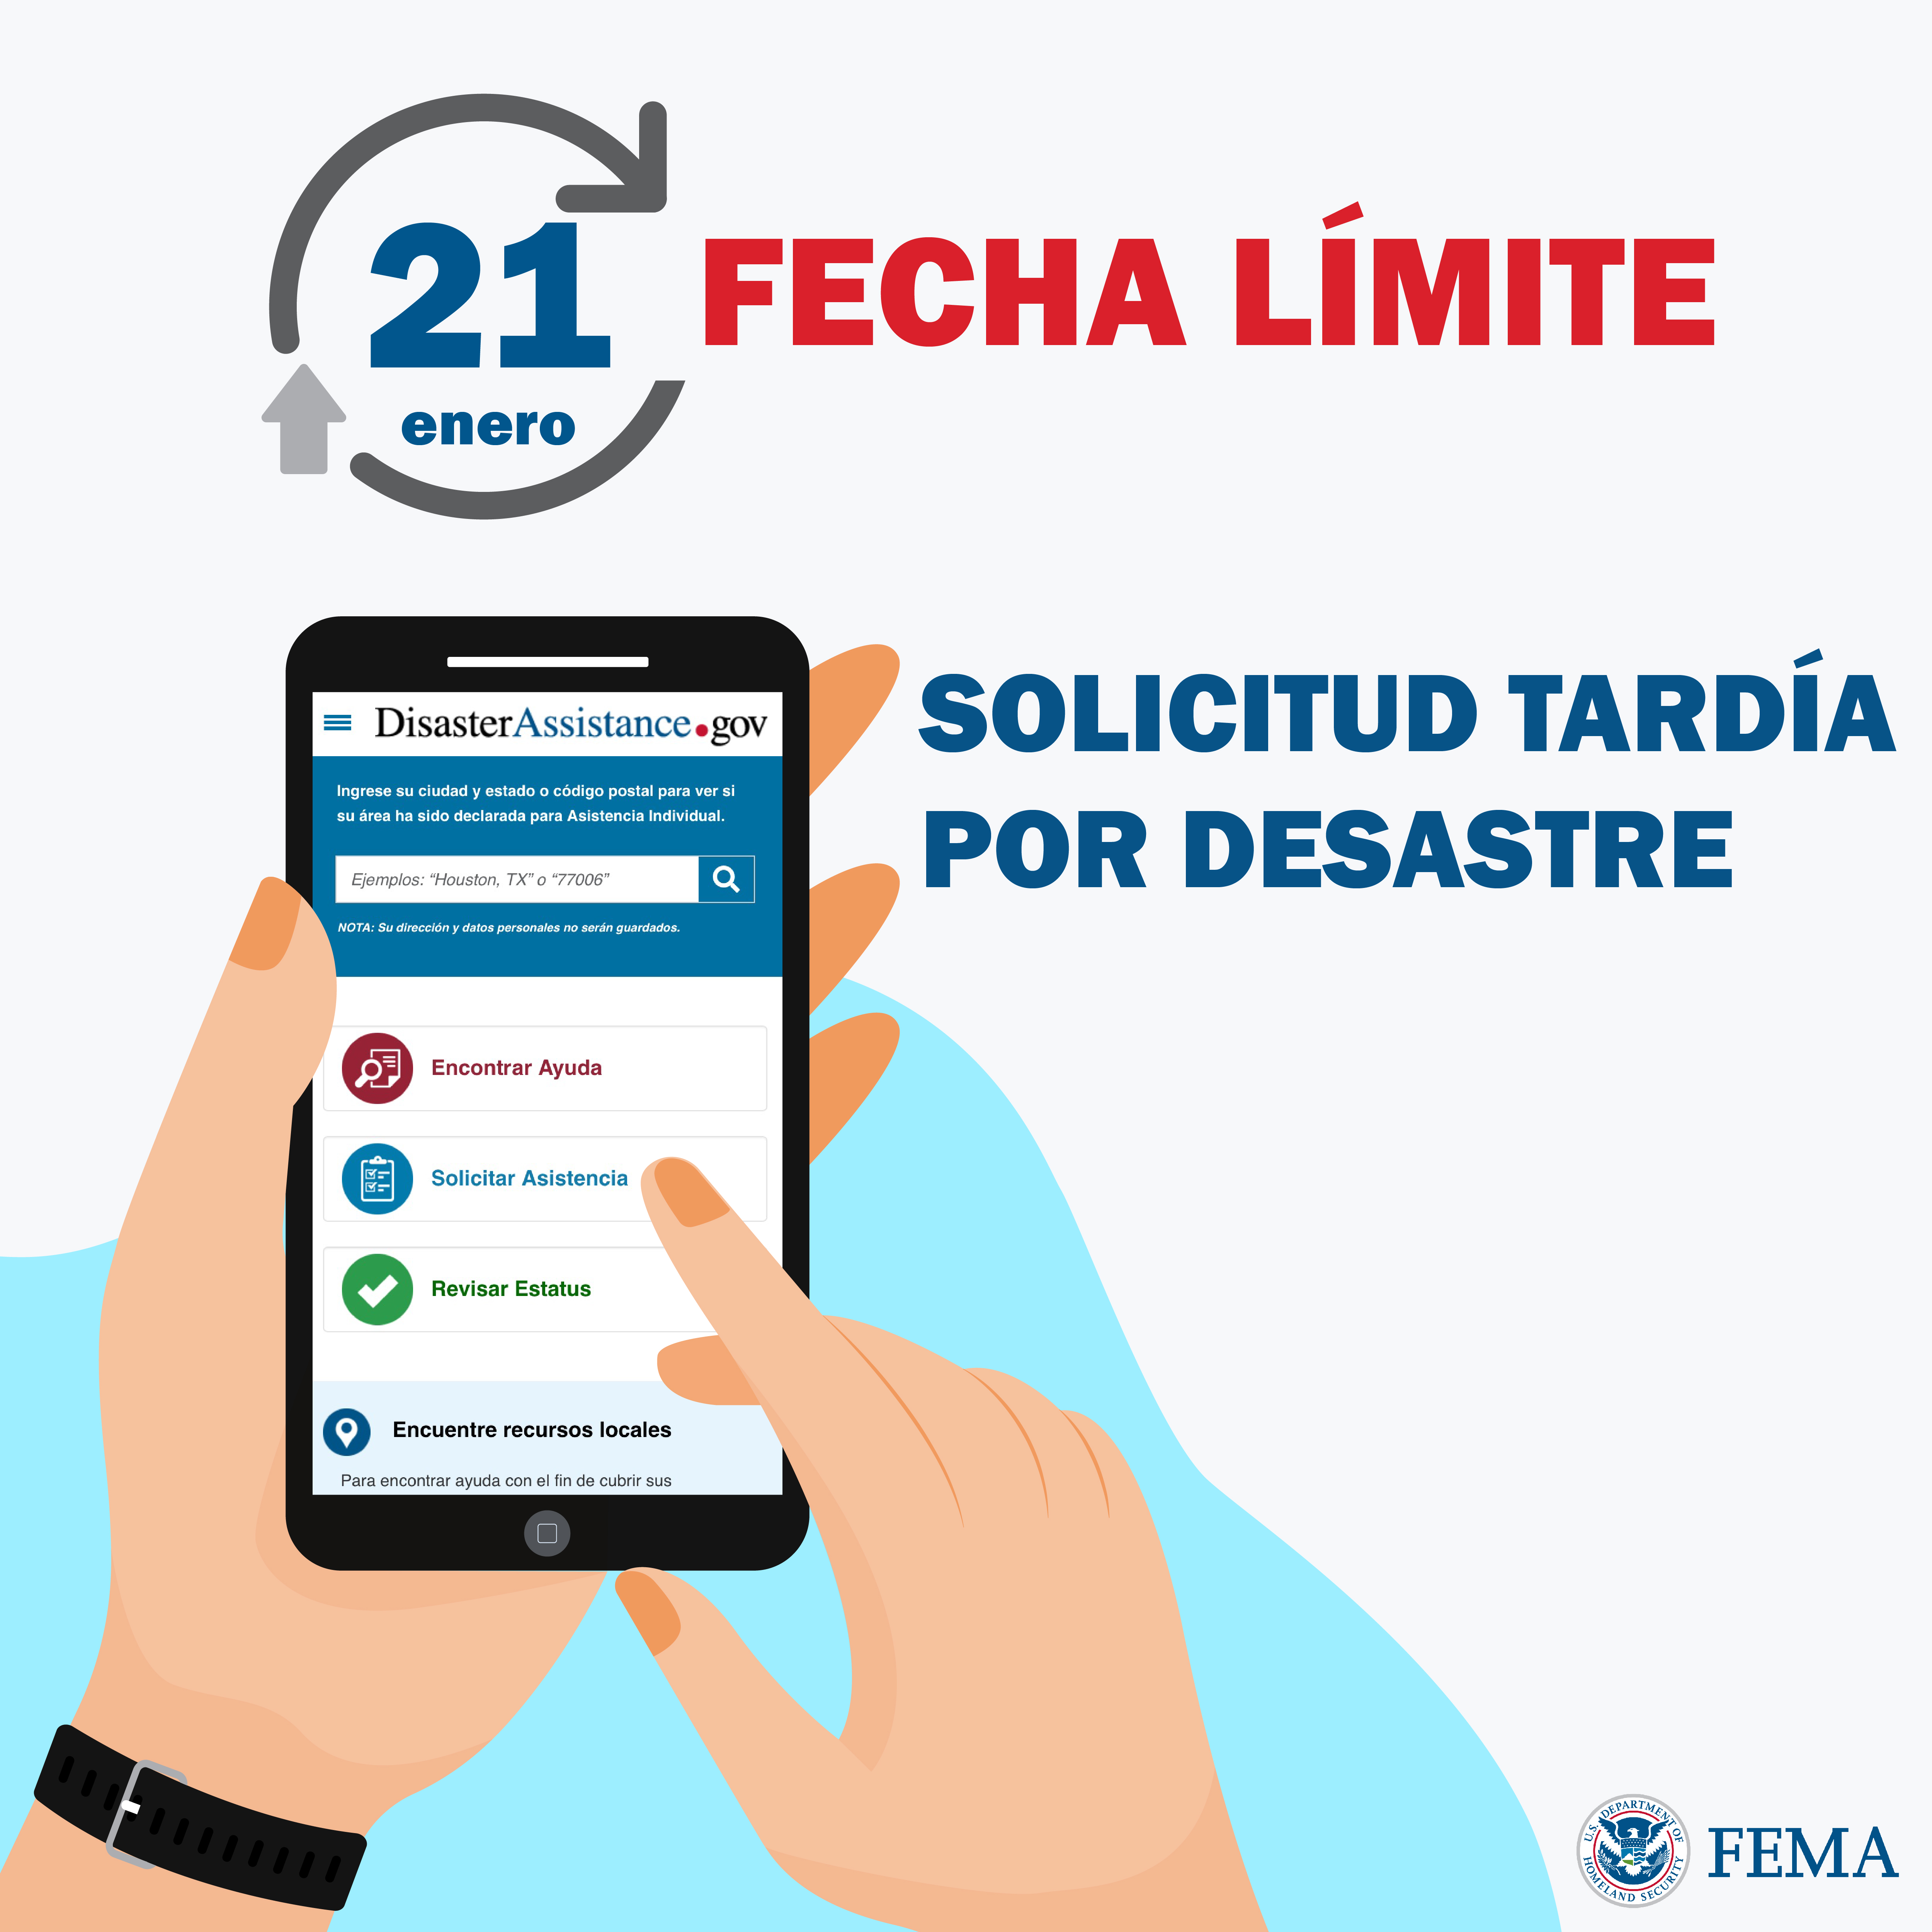 Ilustración de dos manos sosteniendo un teléfono inteligente y una de ellas señalando un icono en la pantalla del celular, texto. Logo de FEMA.